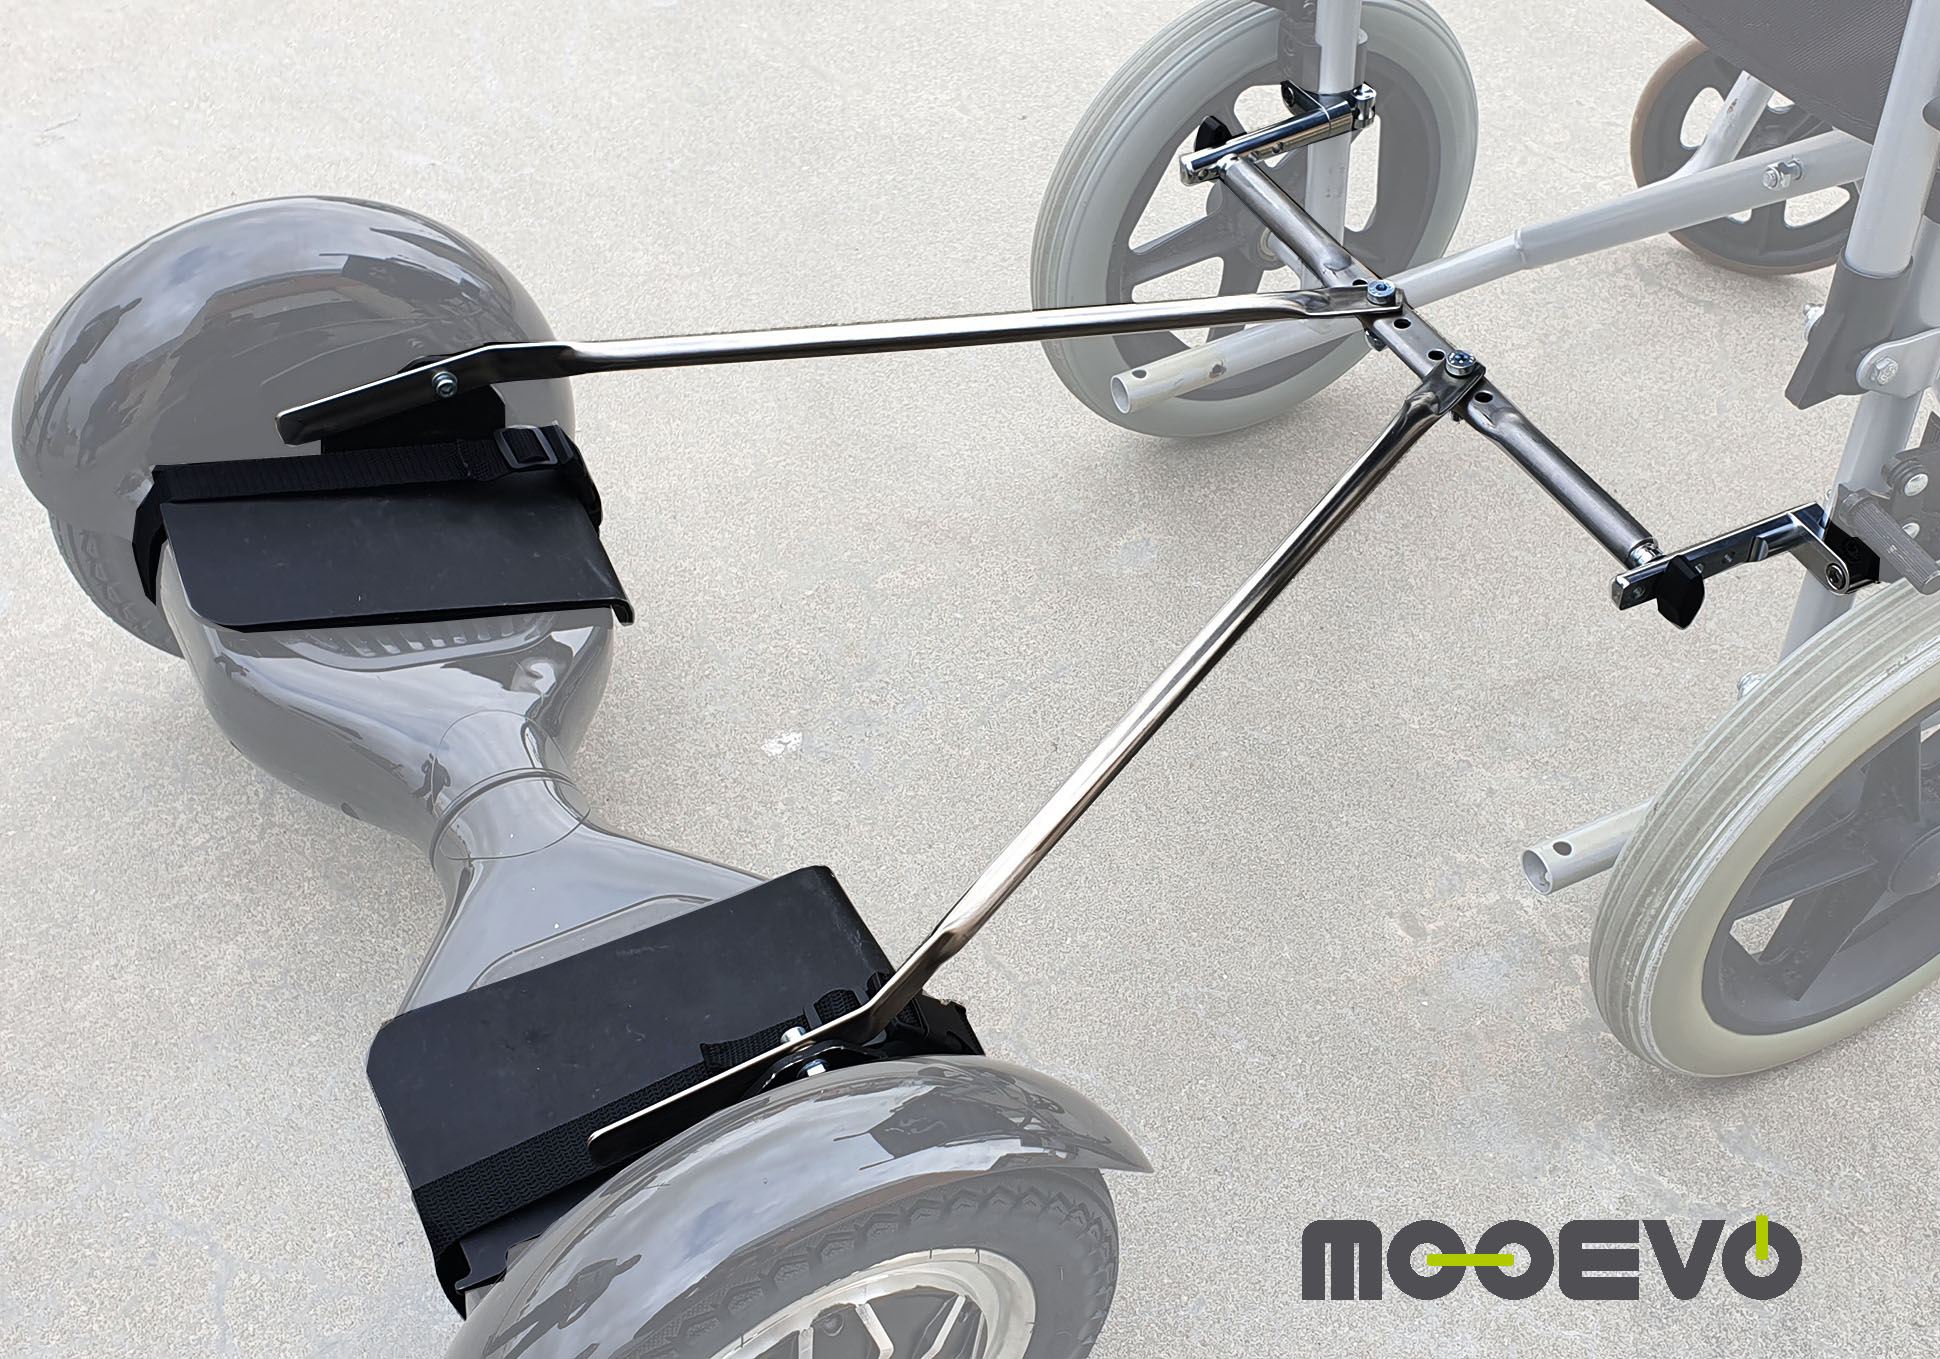 Minúsculo comunidad encima Mooevo Kit Adaptador Hoverboard a Silla de Ruedas - Mooevo Go